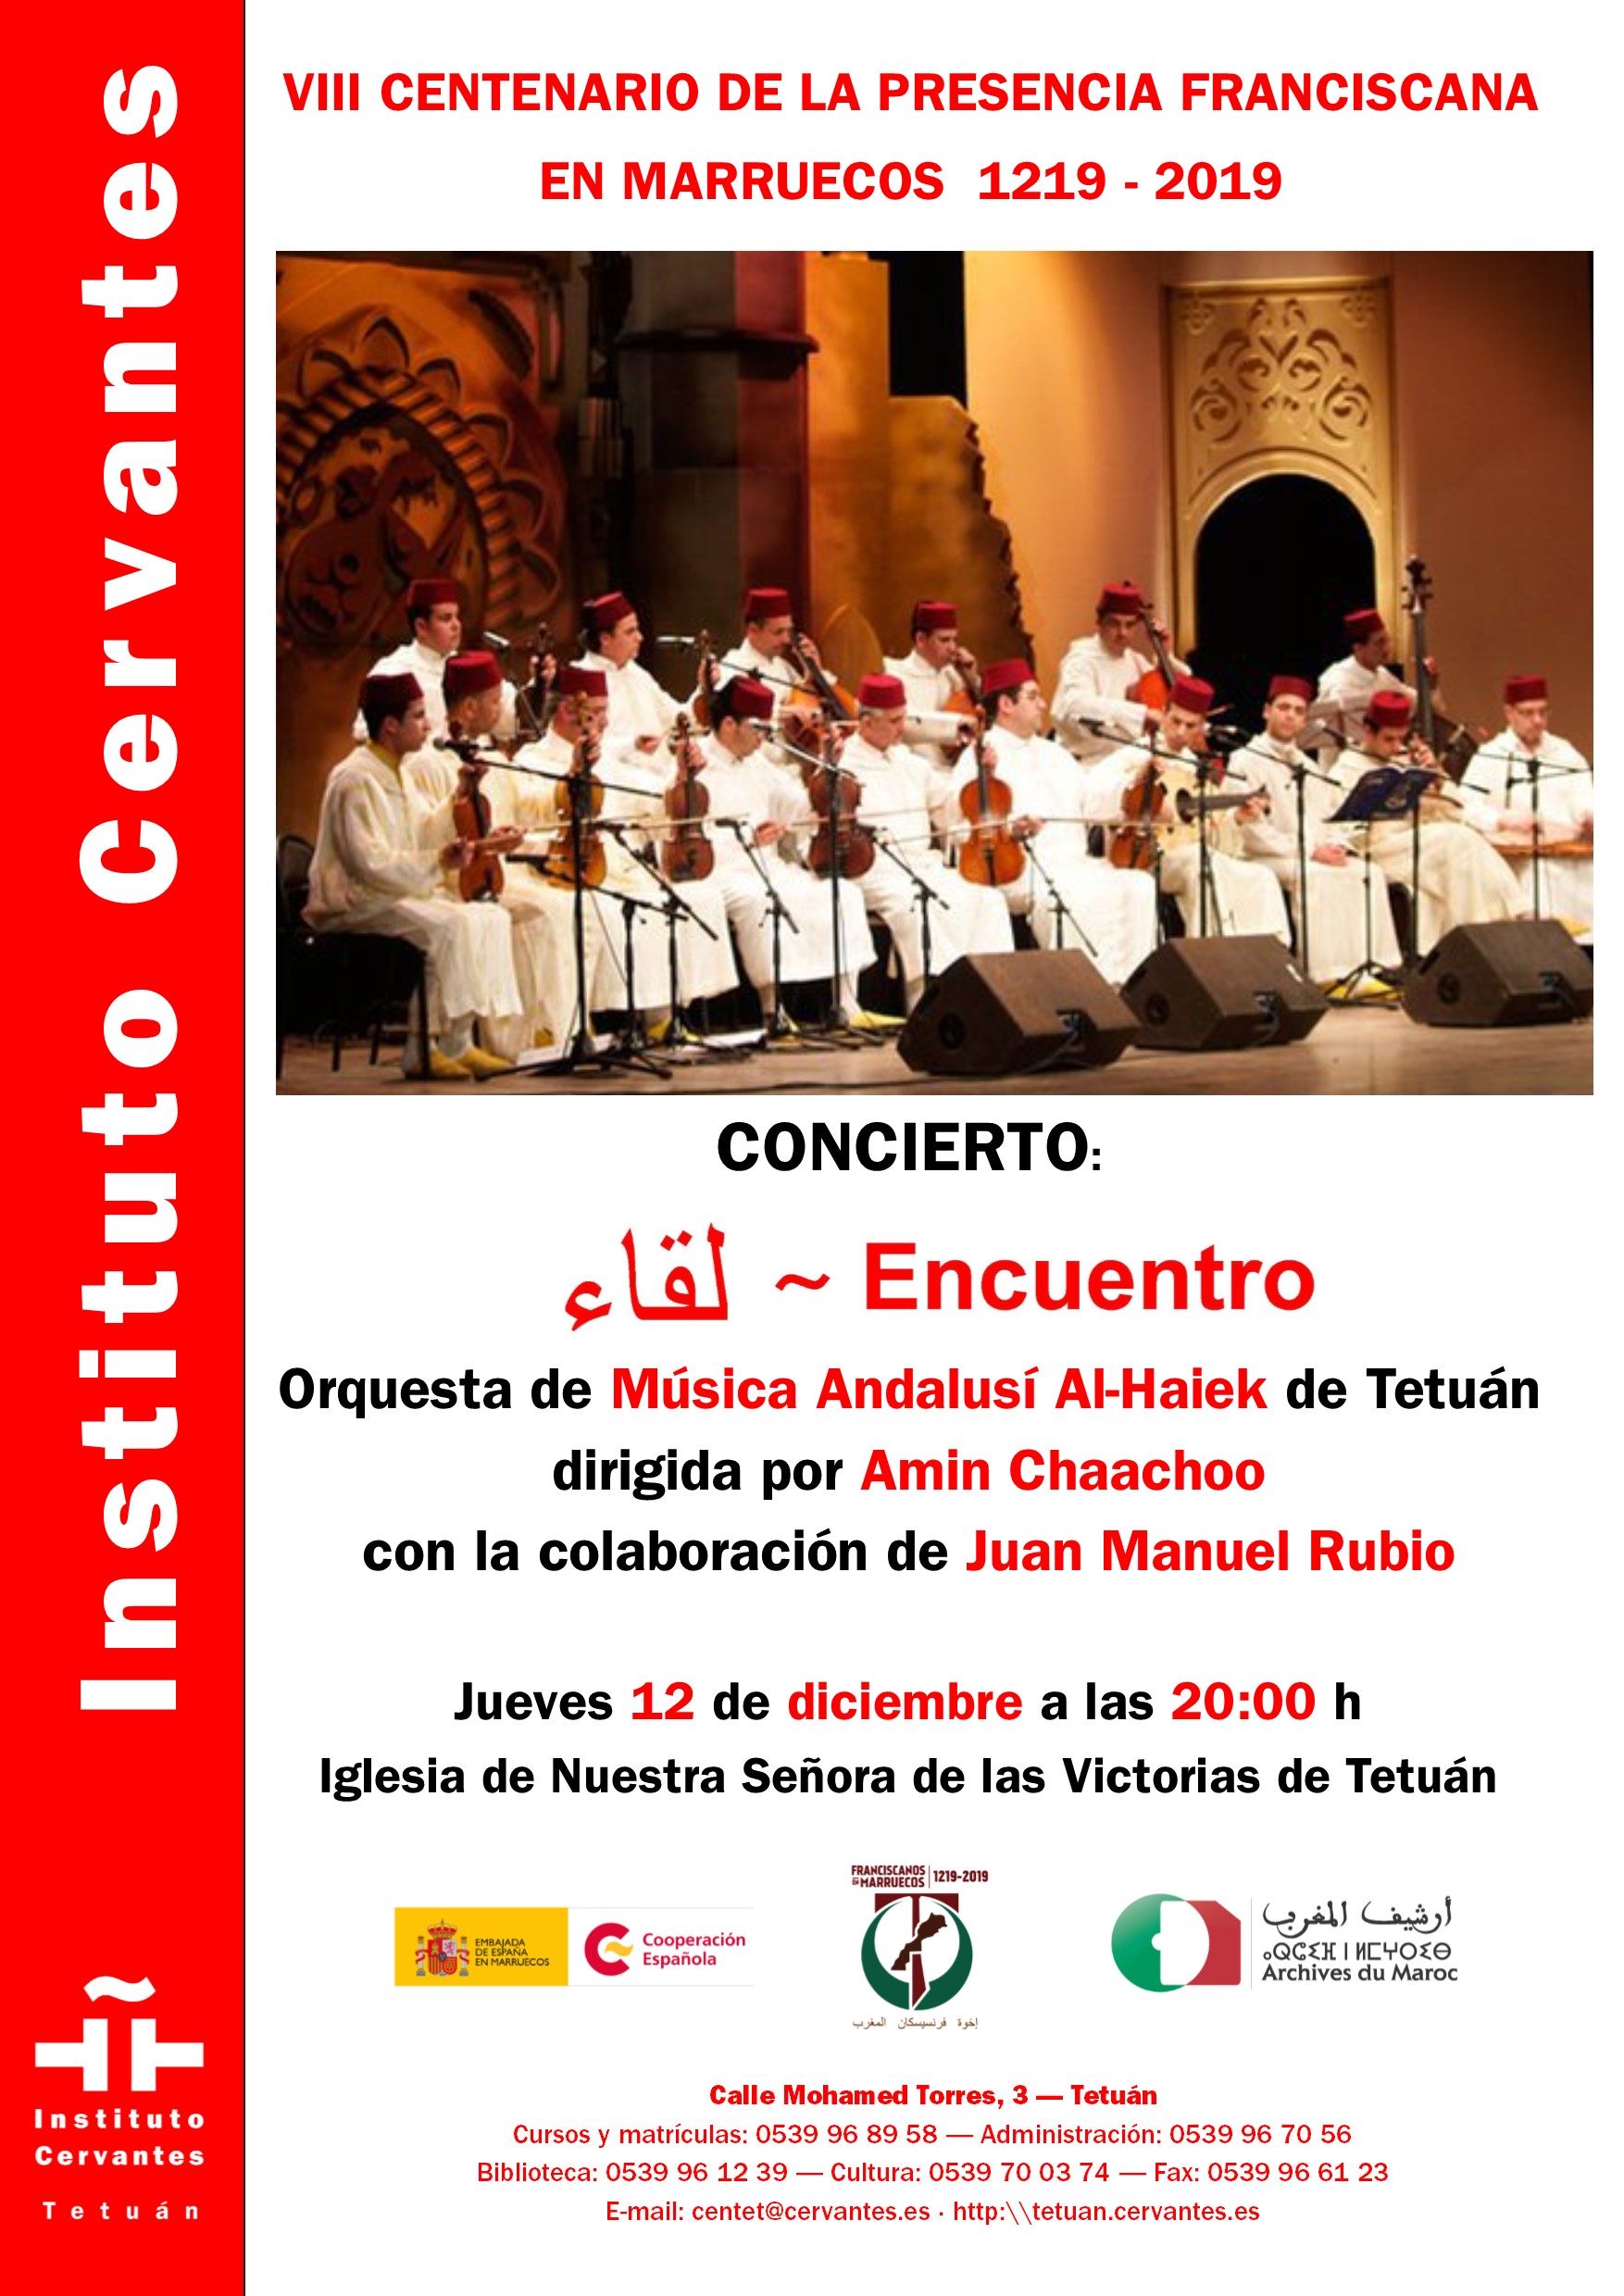 800 años de presencia franciscana en Marruecos. Música hispano-marroquí